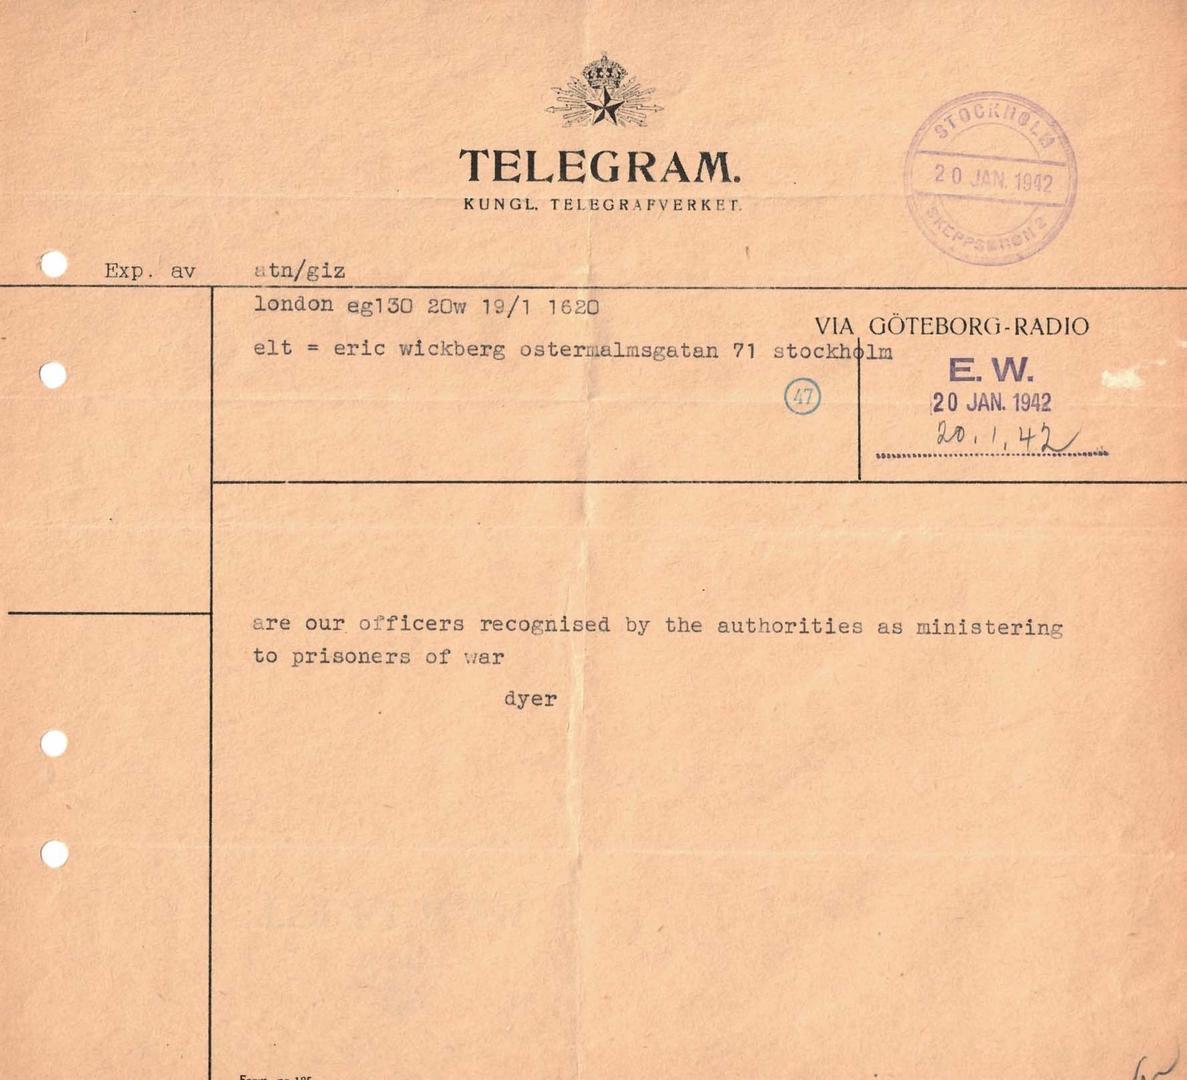 Telegram from Commissioner Frank Dyer to Major Erick Wickberg